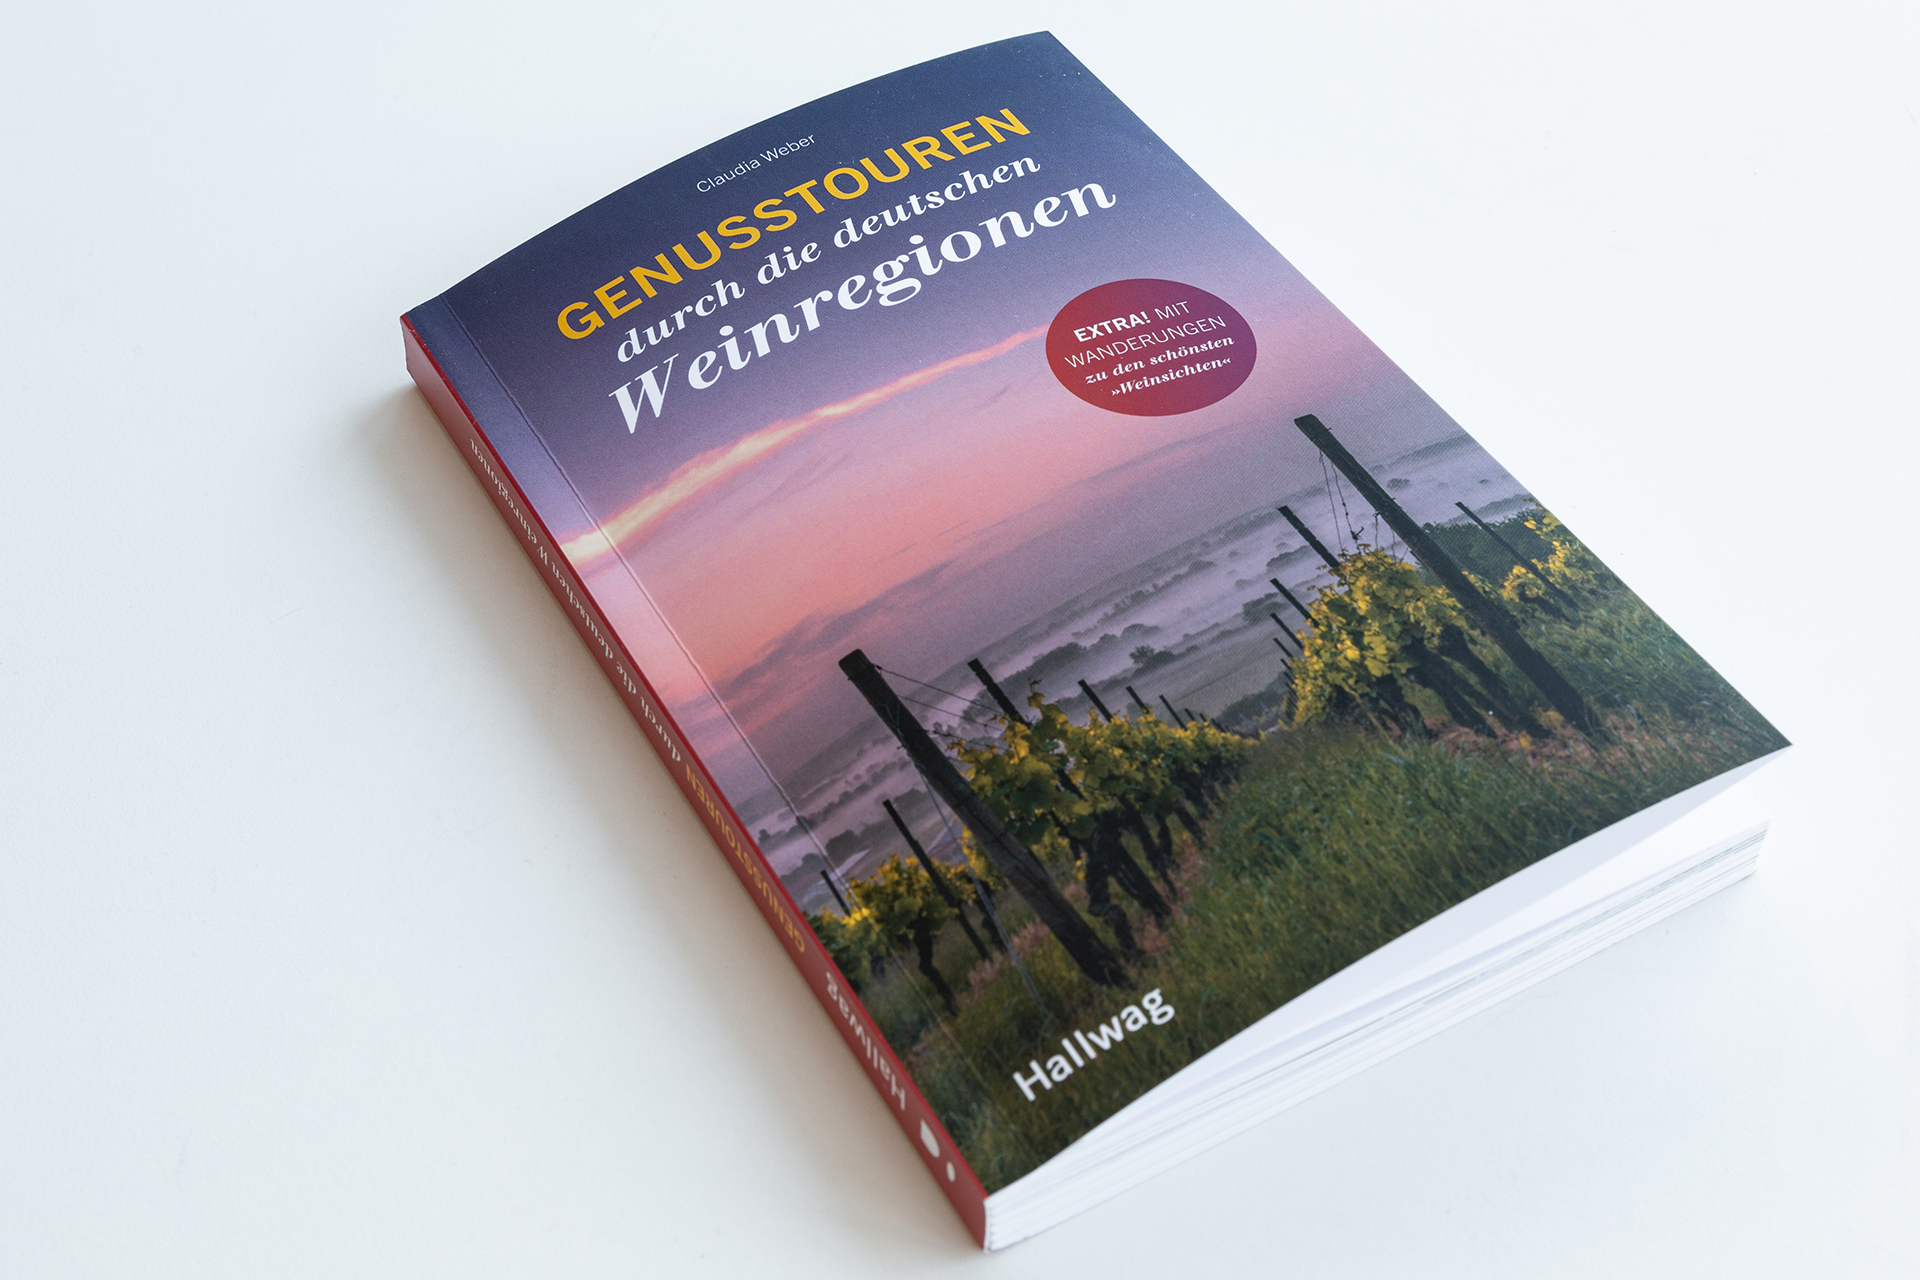 Genusstouren durch die deutschen Weinregionen